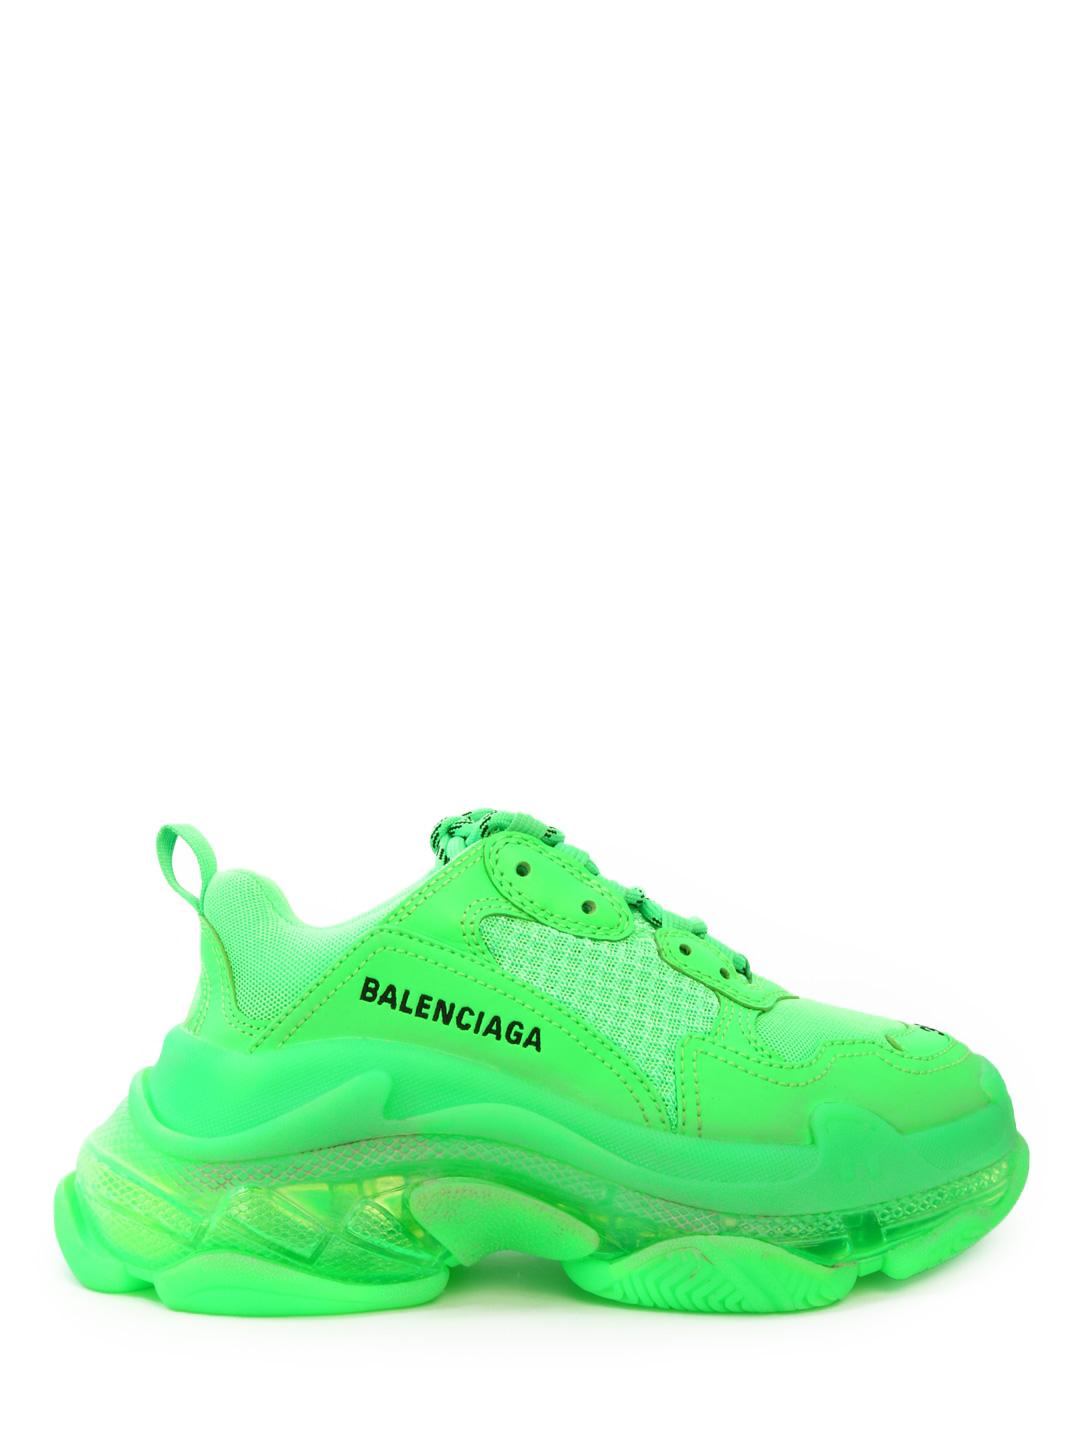 Balenciaga  Shoes  Balenciaga Arena Hi Olive Green Size 4 Eu  Poshmark